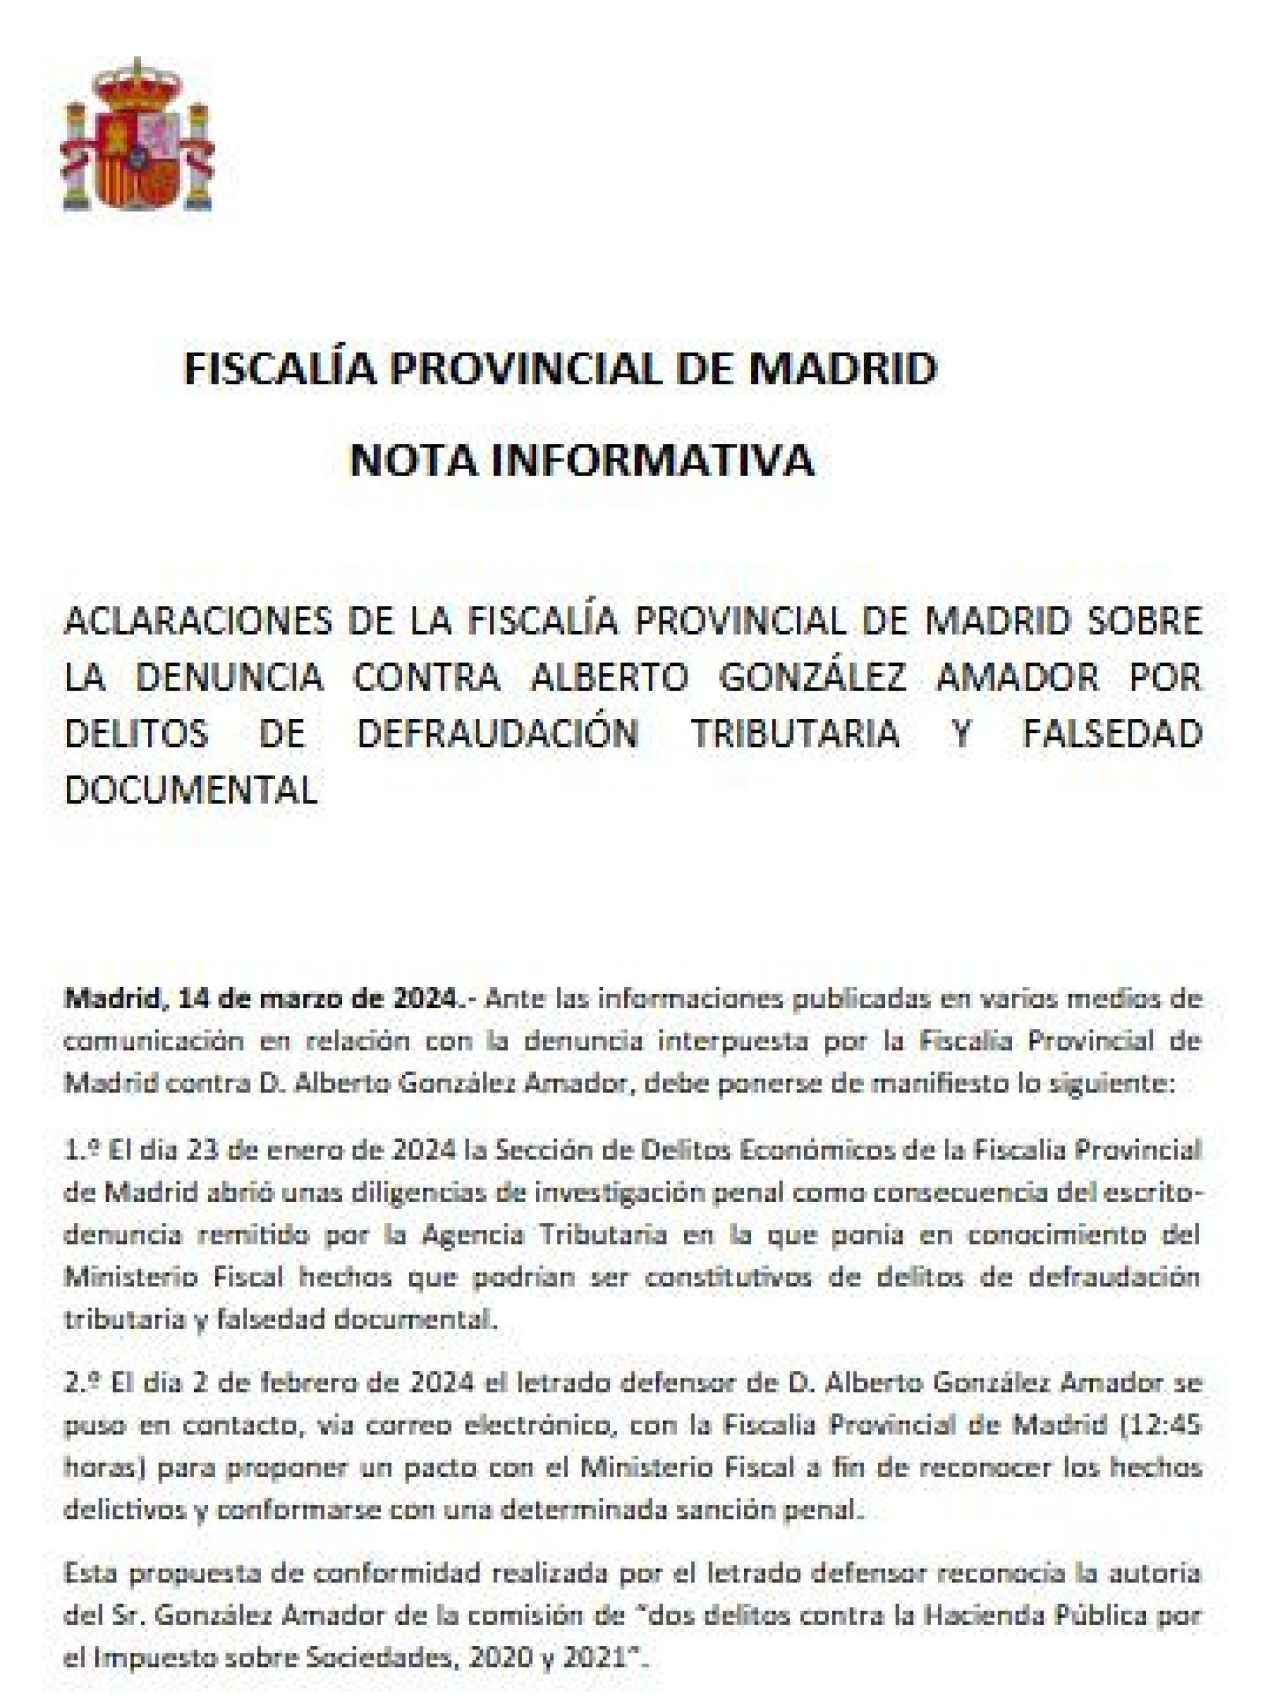 Comienzo de la 'Nota informativa' de la Fiscalía Provincial de Madrid, objeto de la querella de Alberto González Amador./